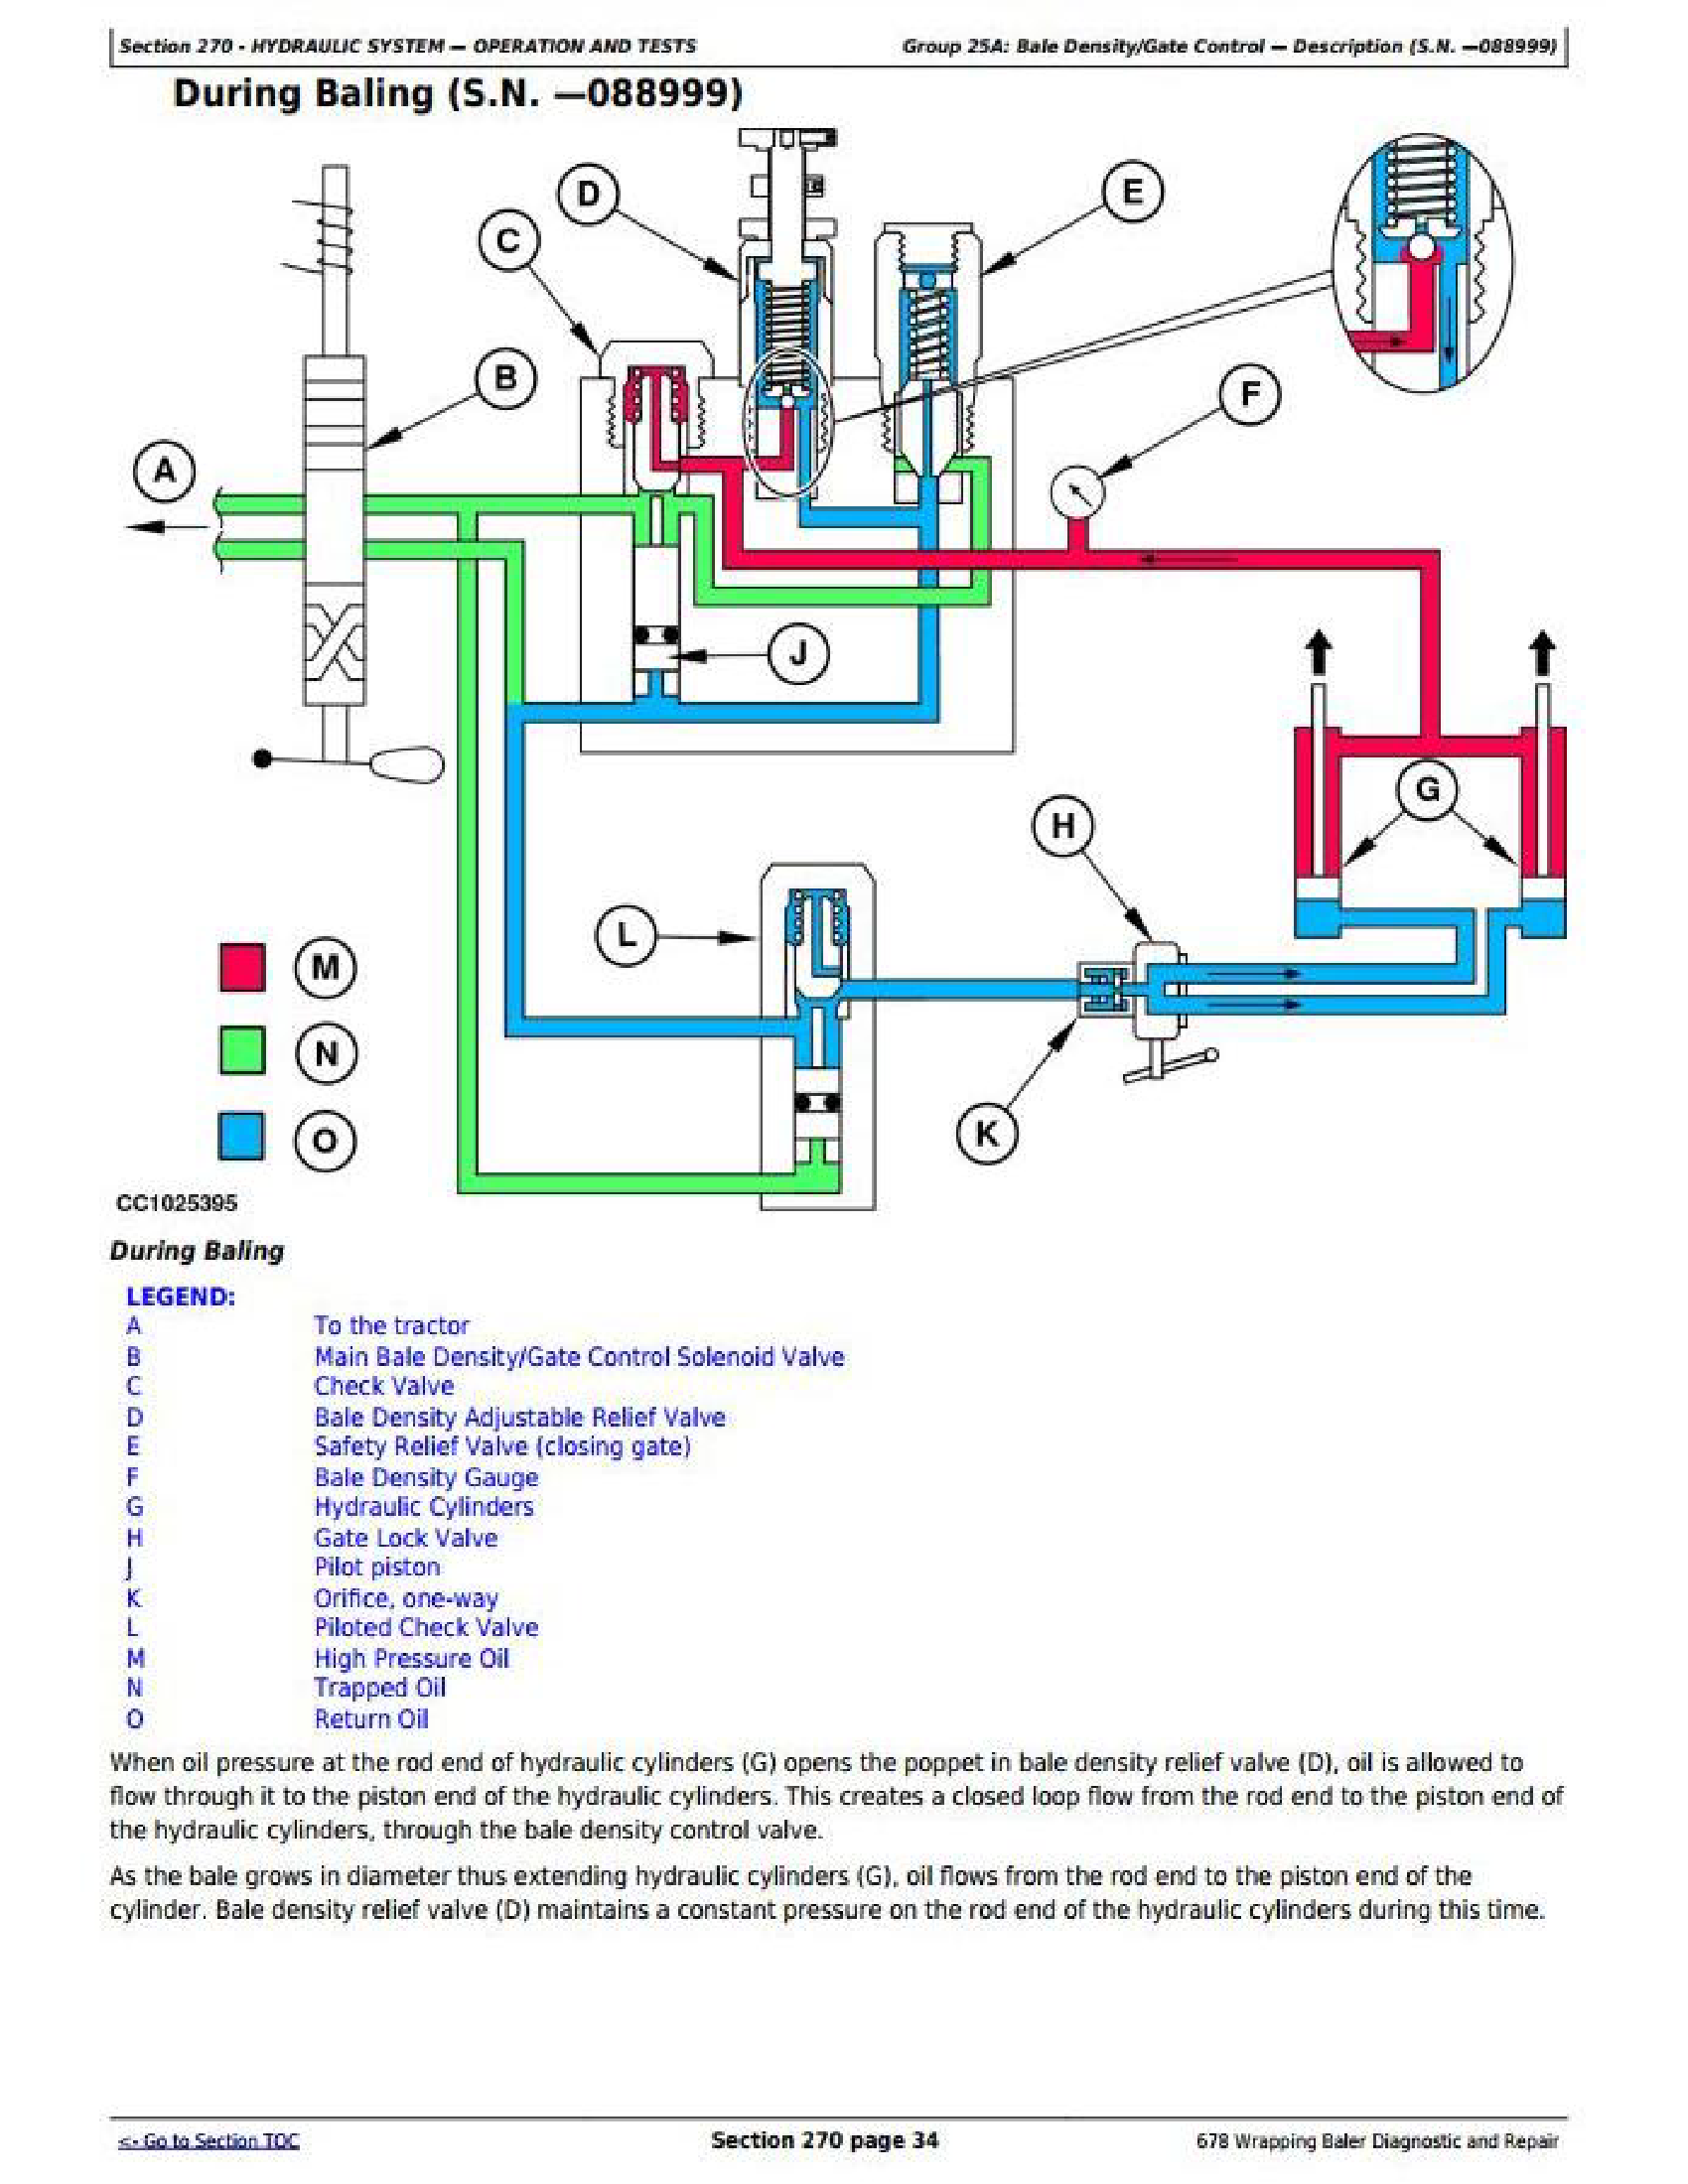 John Deere E101 manual pdf